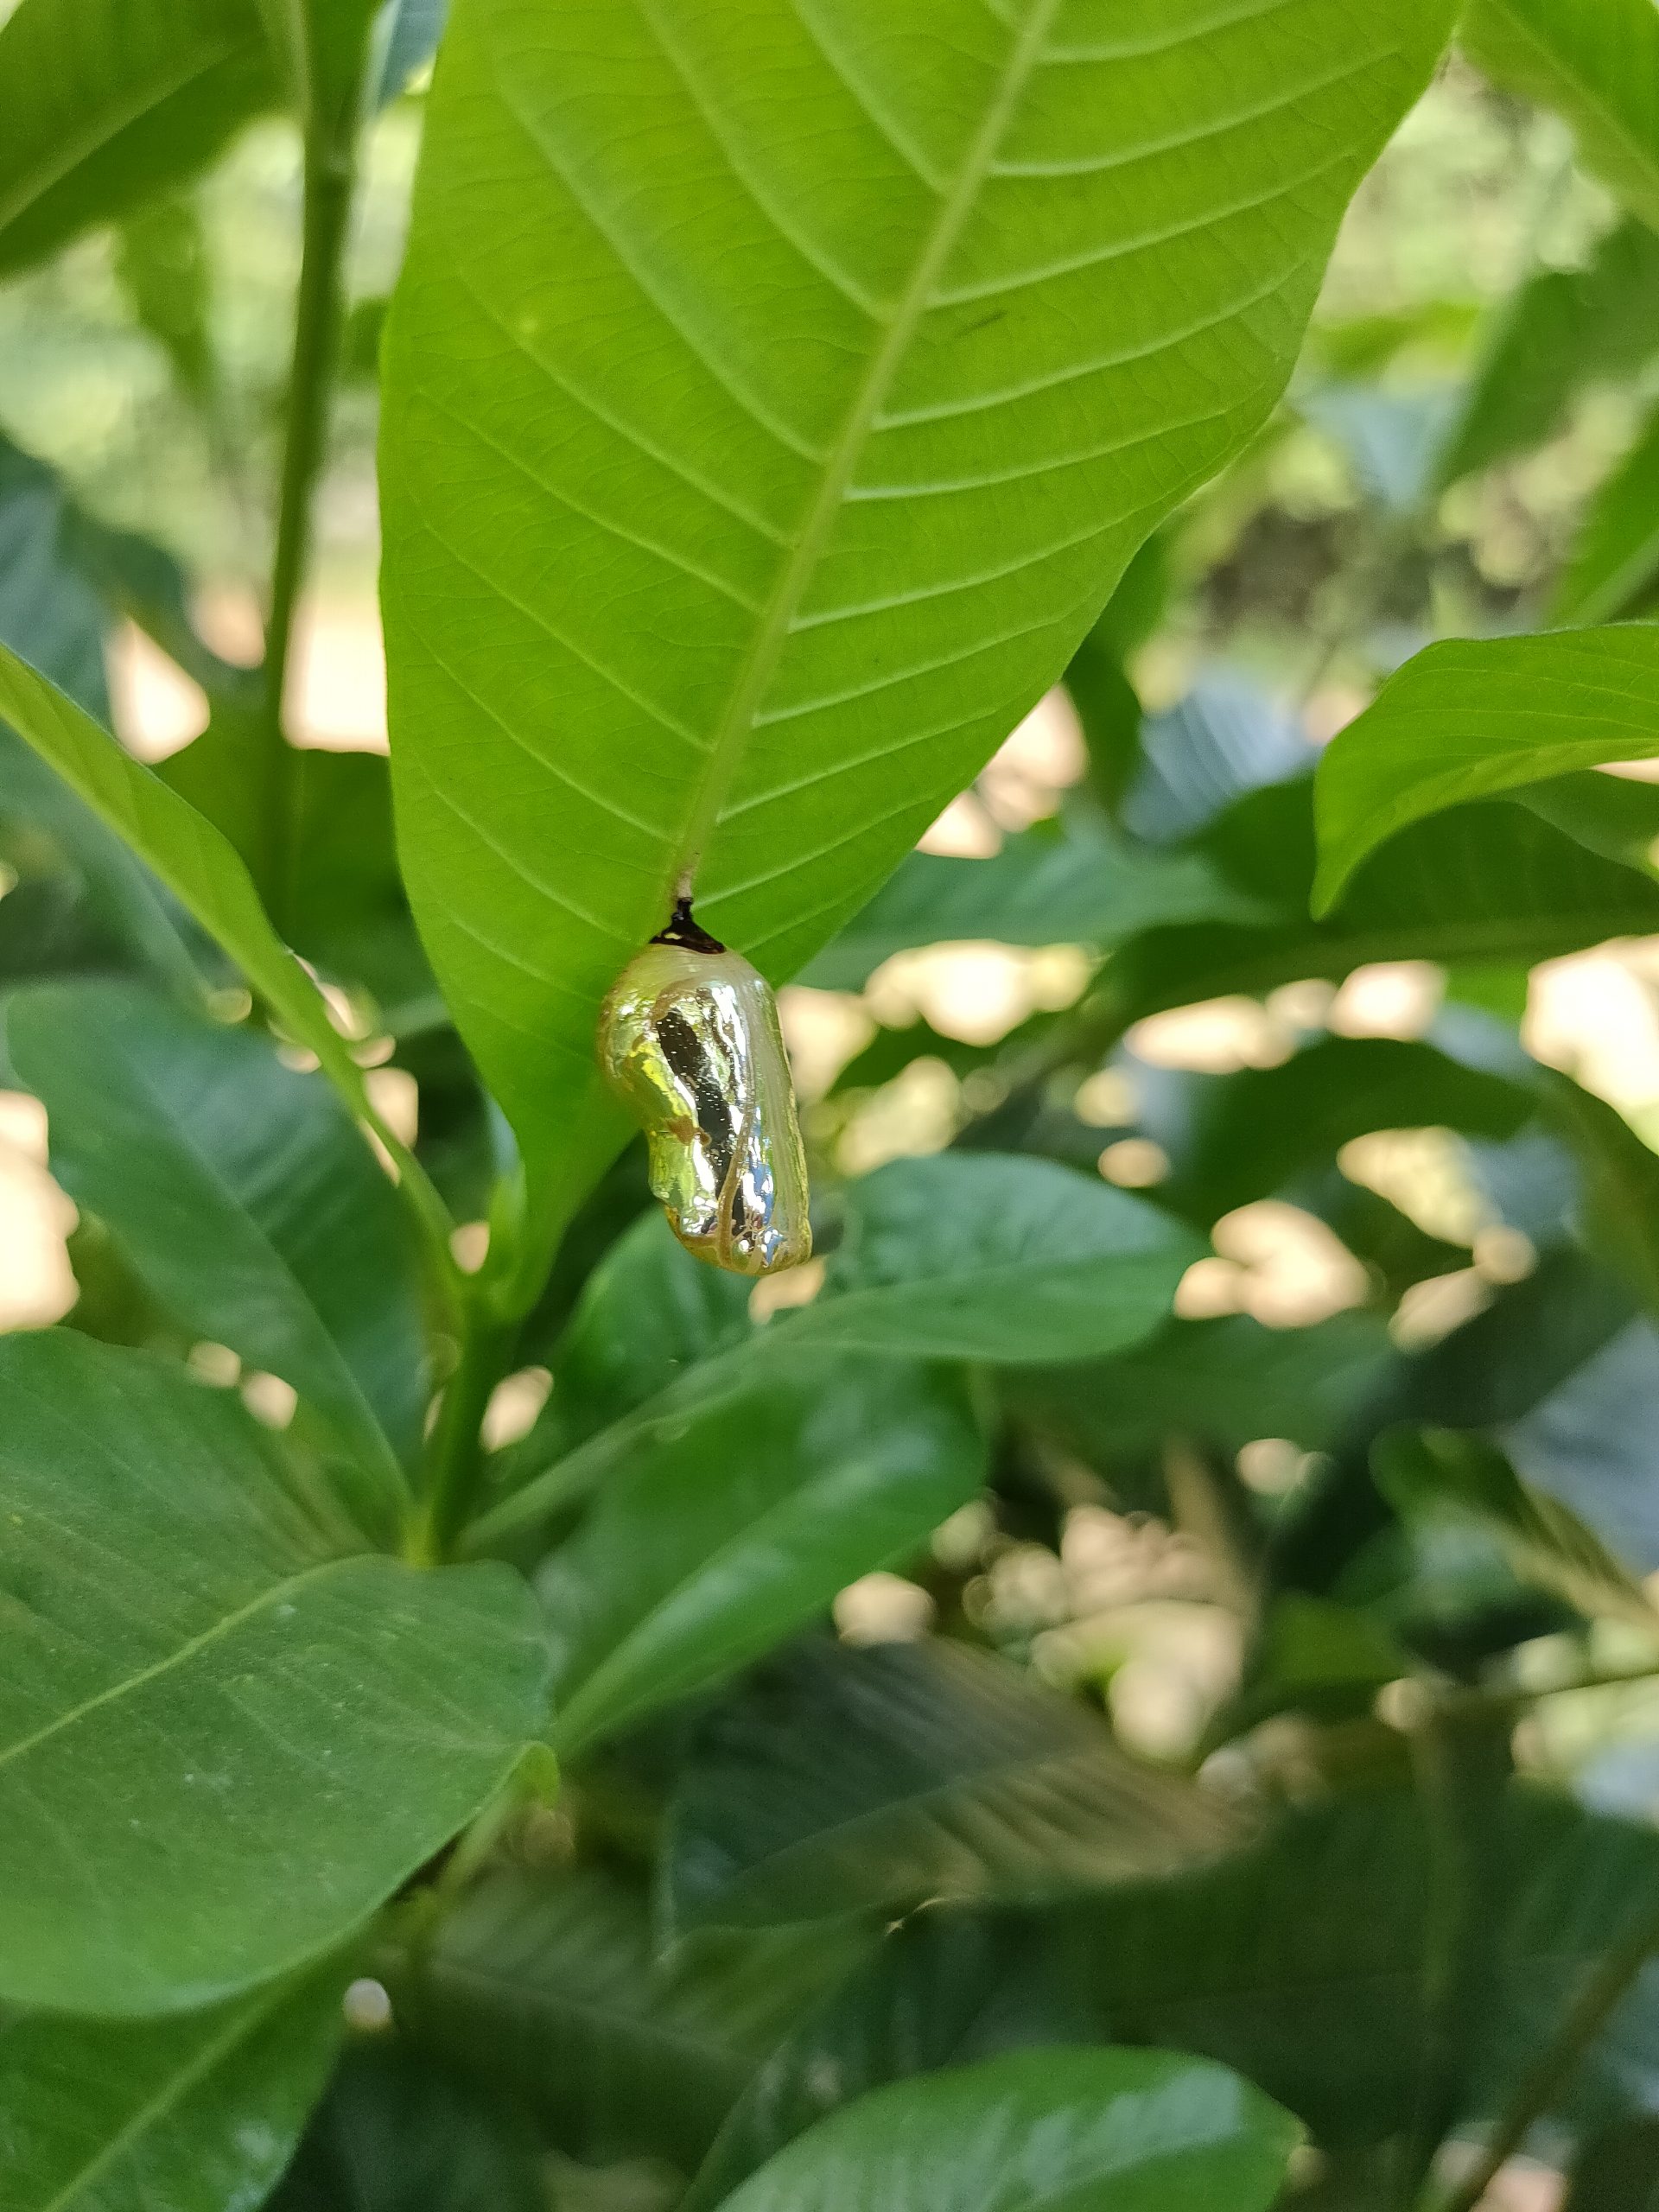 Pupa on a leaf